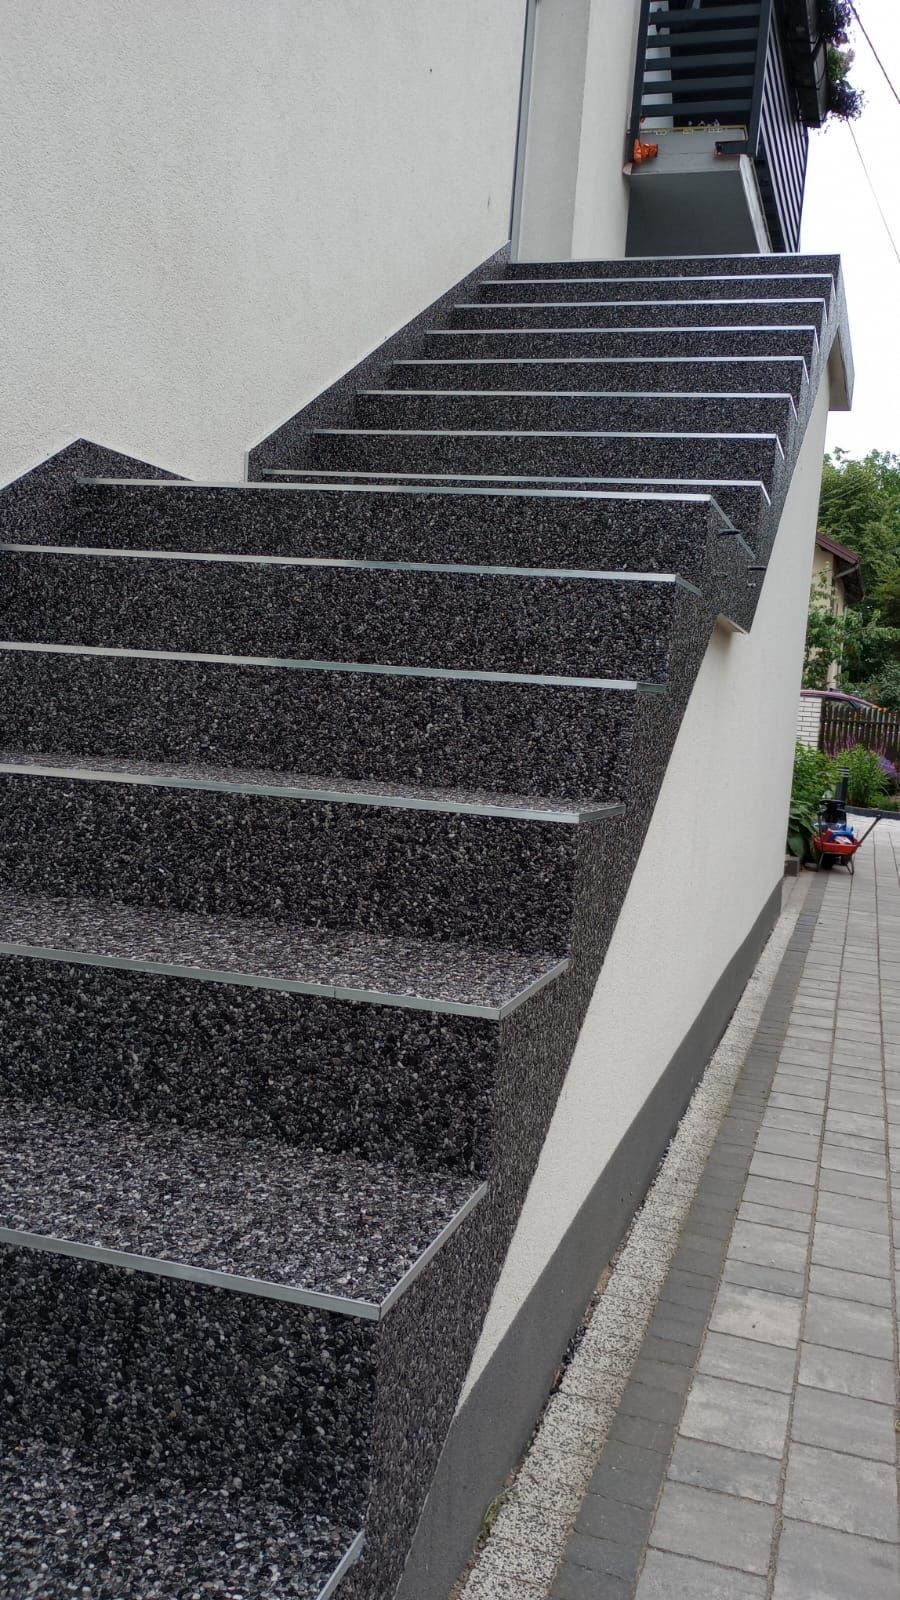 kamienny dywan balkon schody taras hydroizolacja usługa materiały